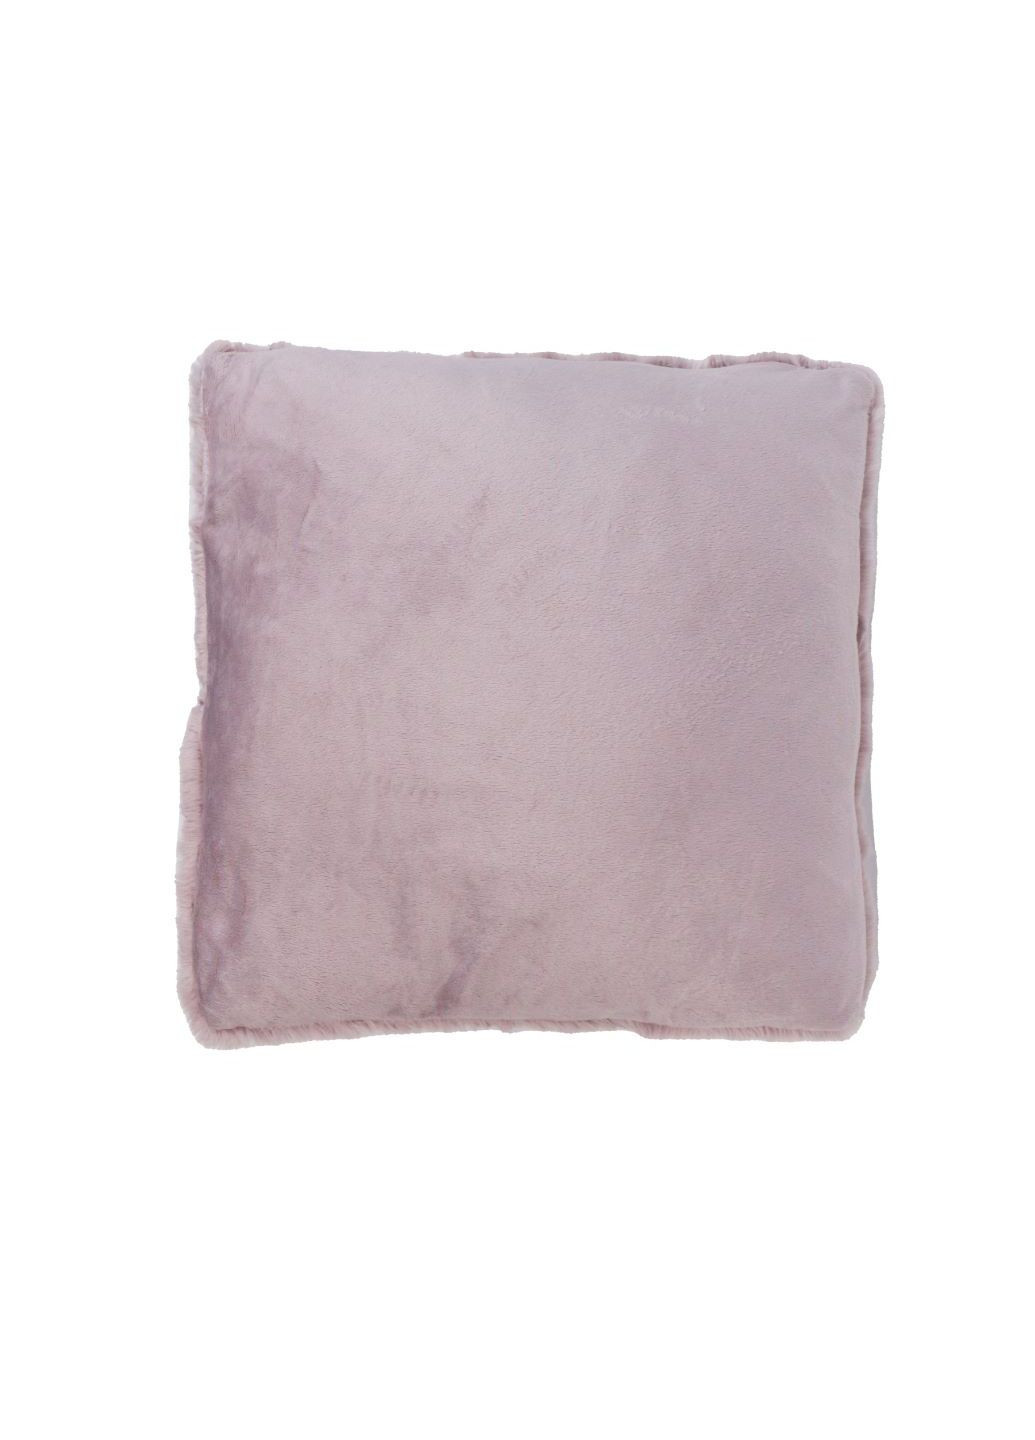 Декоративная подушка в ромбы 45х45 см розовая Lidl (276254513)